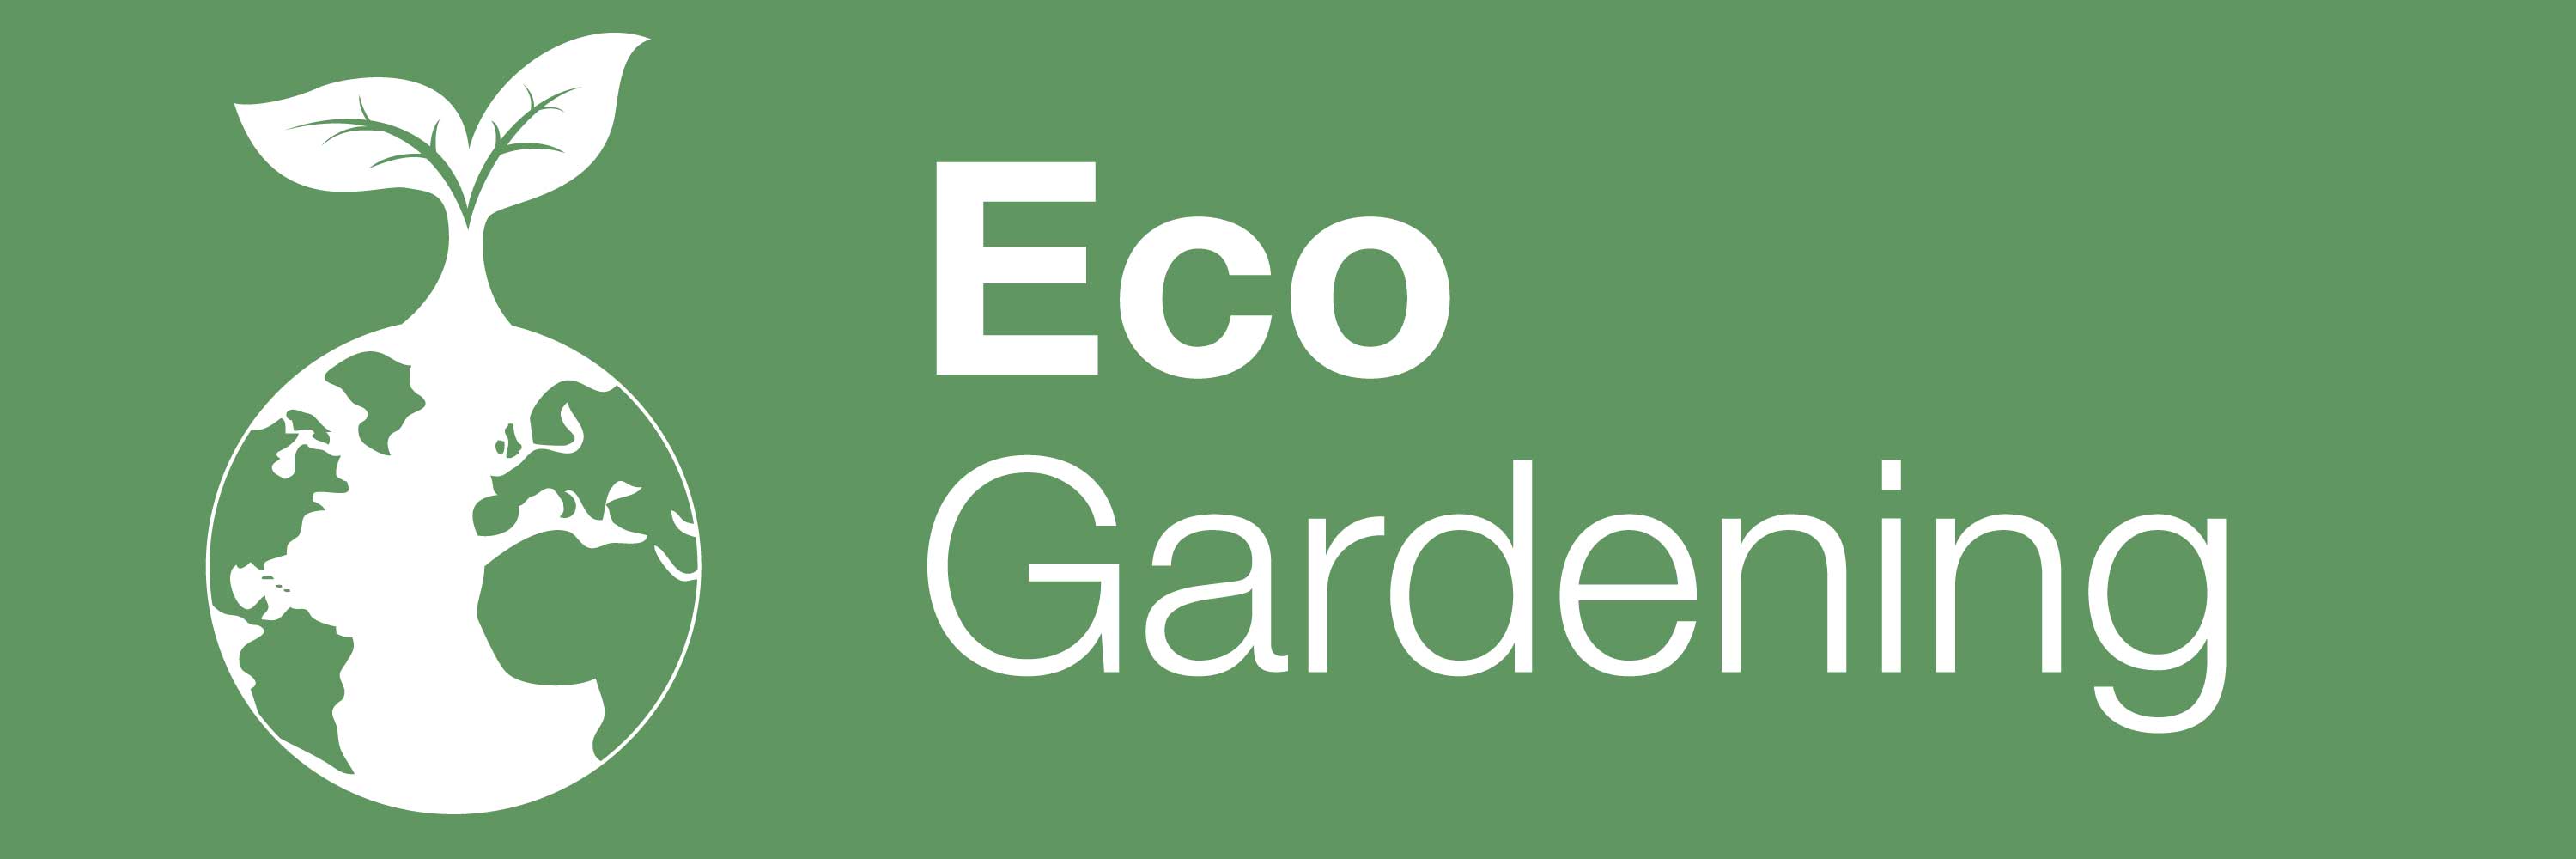 garden logo care garden logo nature logo Stock Vector | Adobe Stock